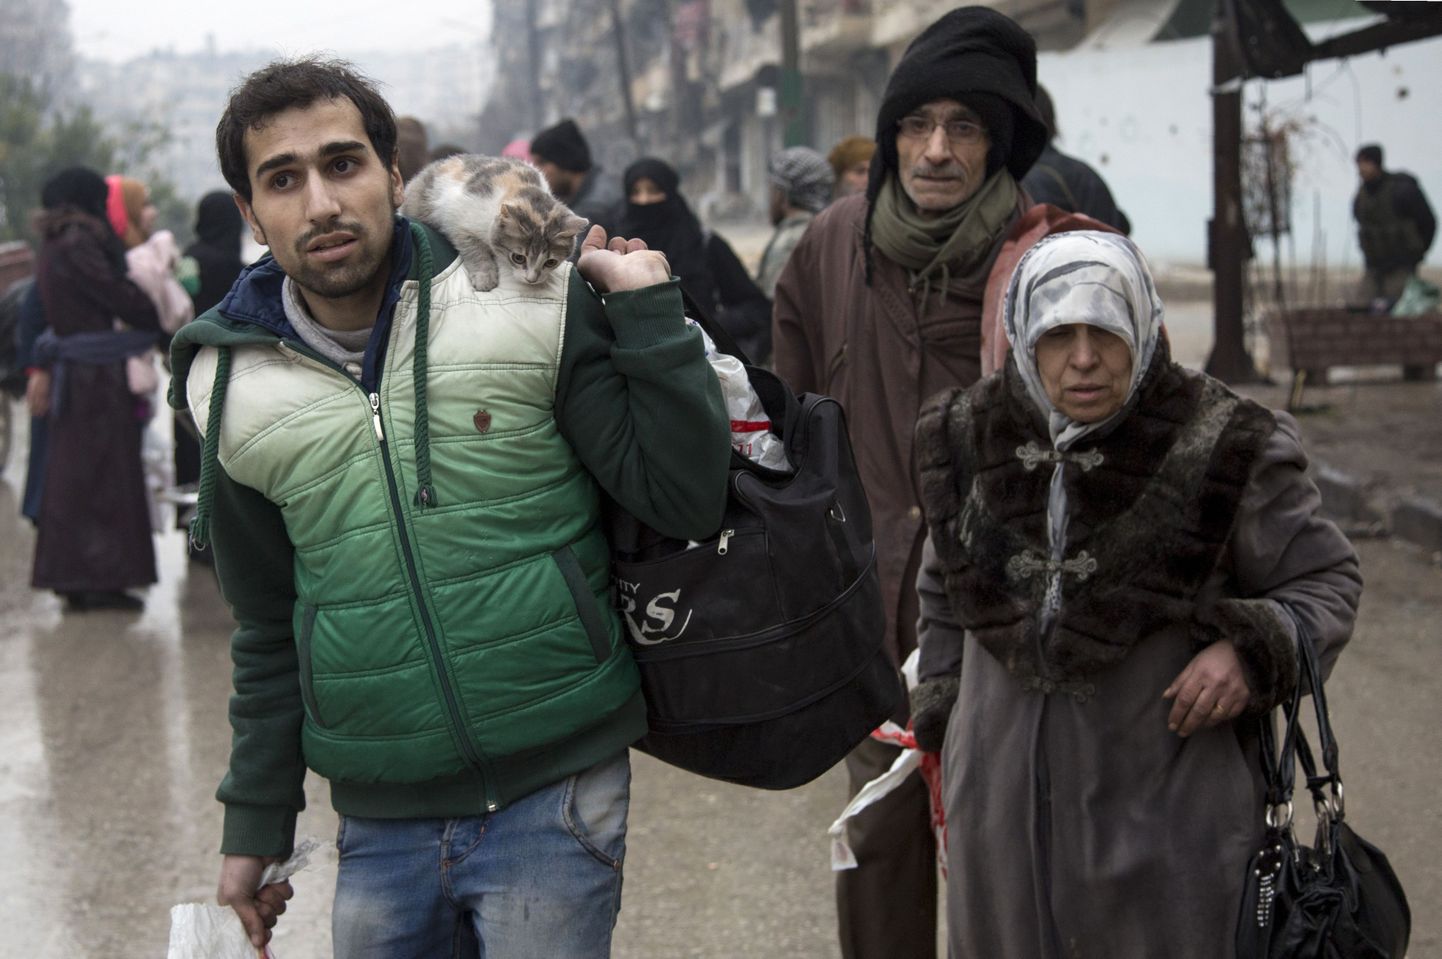 Tsiviilisikud lahkumas Aleppo idaosast